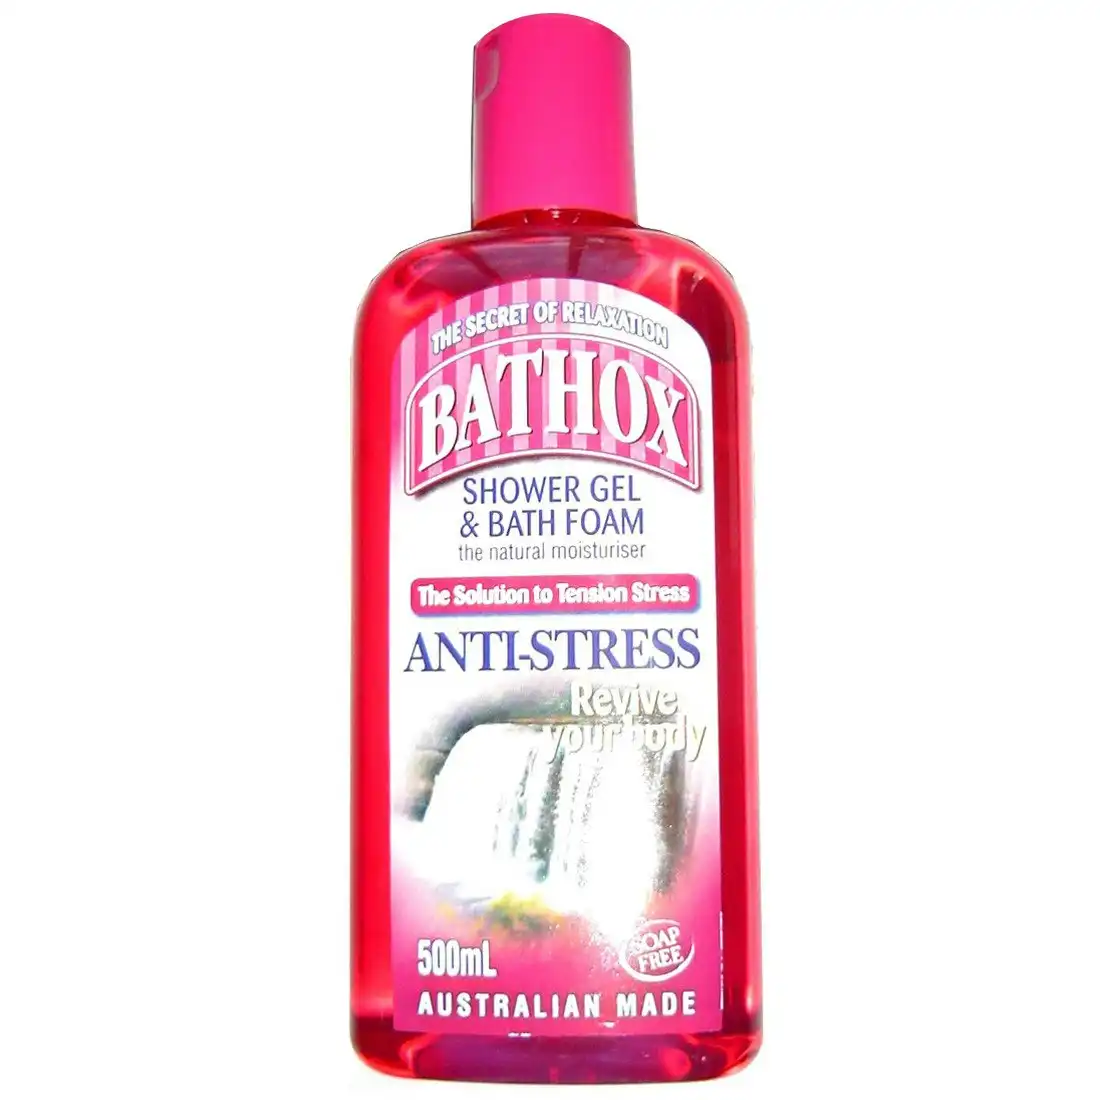 Bathox Shower Gel & Bath Foam Anti-Stress 500ml